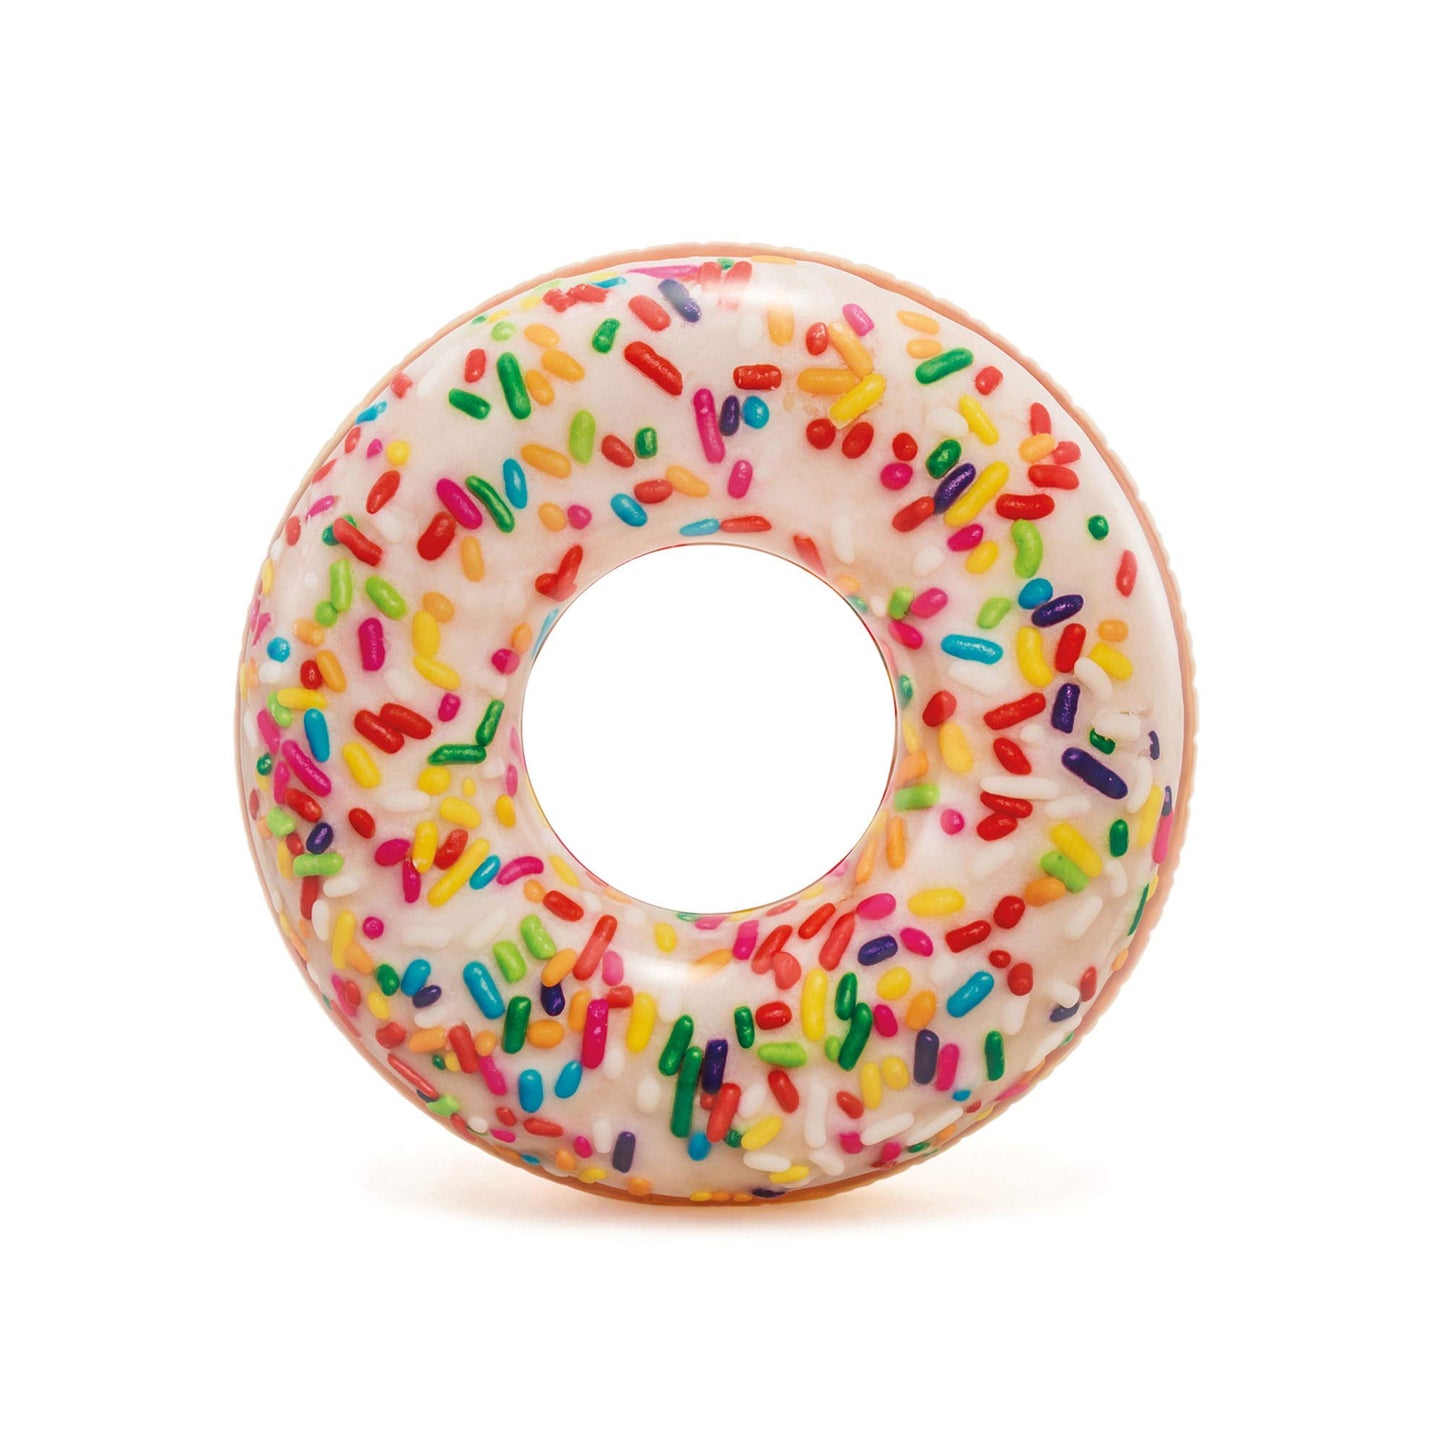 Intex Sprinkle Donut Tube